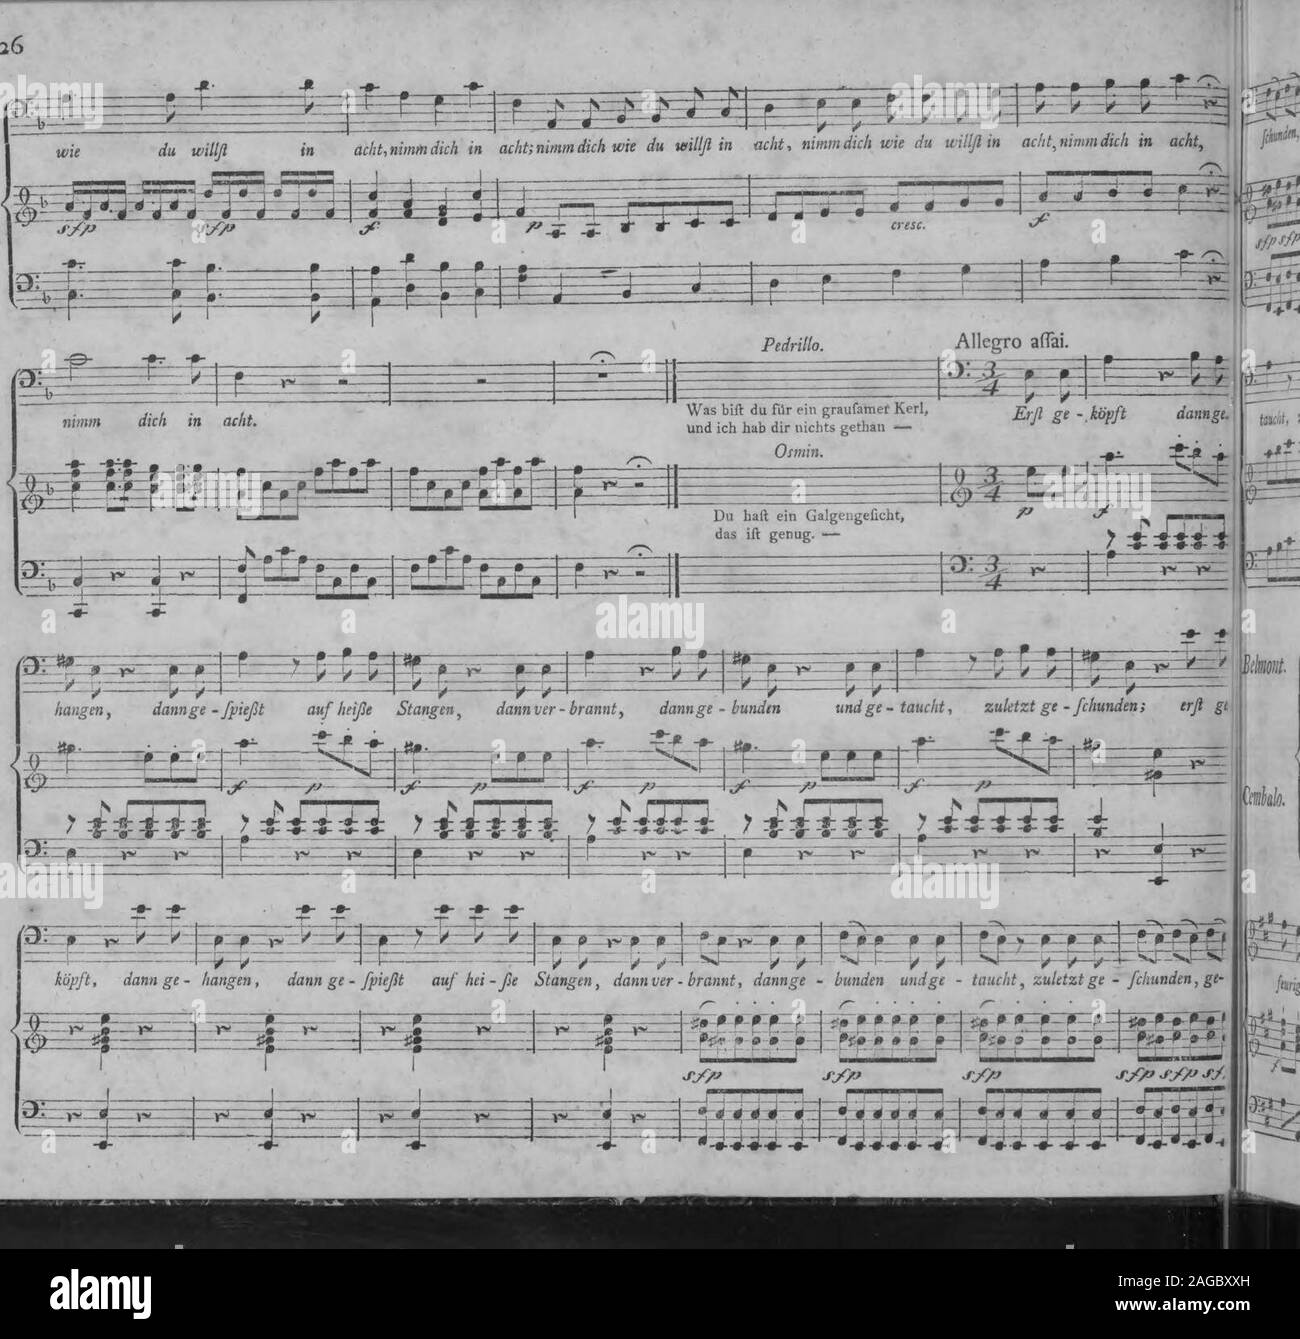 . Die entfuhrung aus dem Serail: ein komischen Singspiels in drey Aufzugen (1796). Mozart, Entführ. as dem Serail. mra^. m ^^Z^m^fchunden, ge-fchunden; erfl ge-köpft, dann ge-hangen, dann ge-fpiefst in heiße Stangen, dannver-brannt, dannge-bunden undge- r  ^ ^ t* T*^, Rf fl - Stockfoto